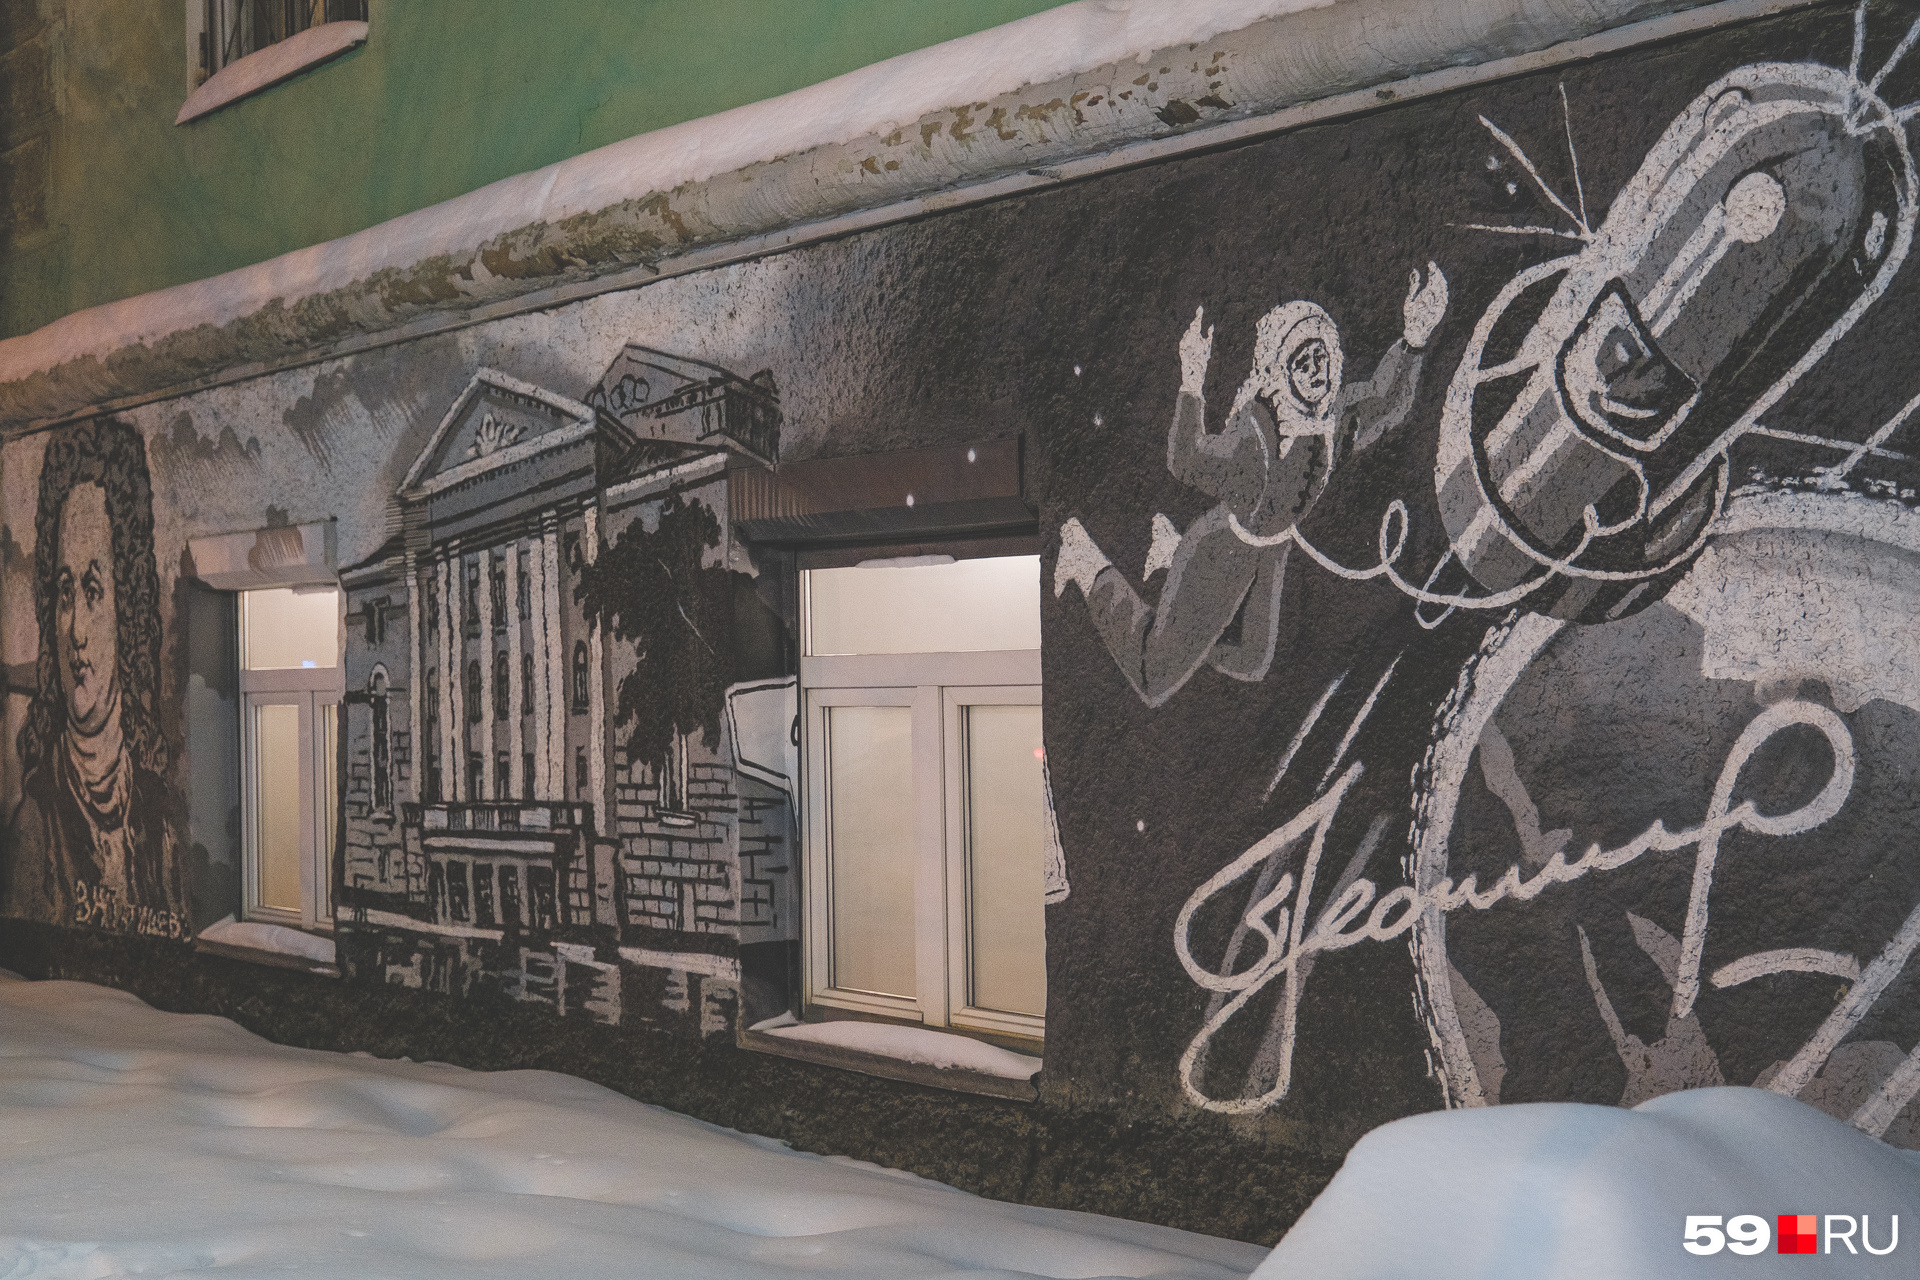 Снаружи бар украшен граффити со знаковыми для Перми людьми — от Татищева до космонавтов, приземлившихся после полета в Прикамье 